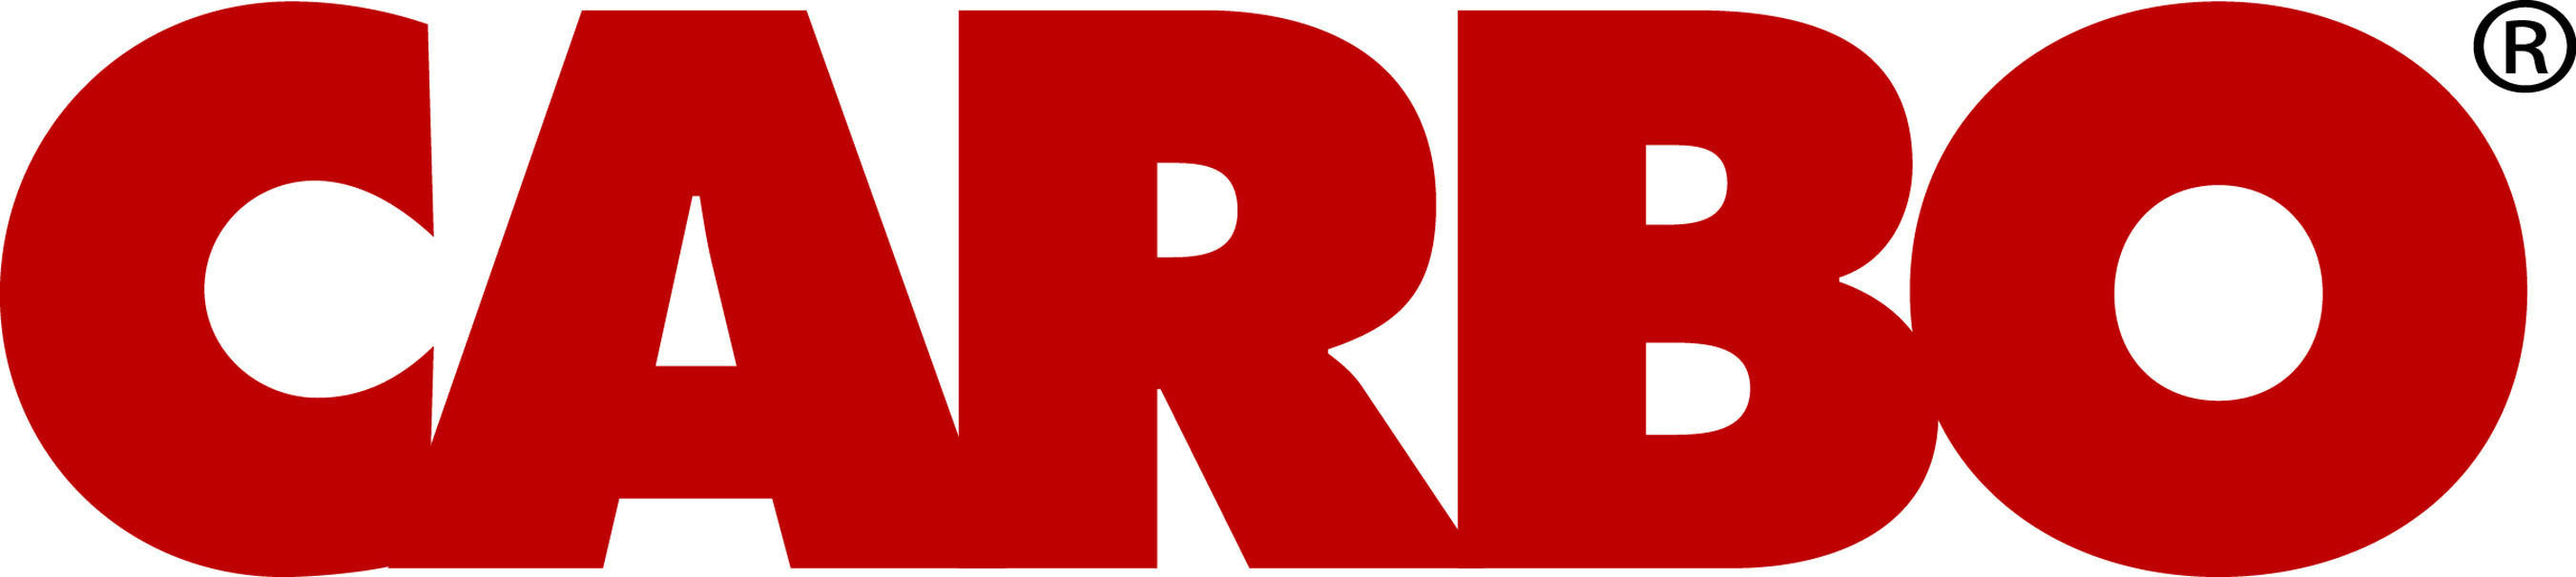 CARBO Logo. (PRNewsFoto/CARBO) (PRNewsFoto/)